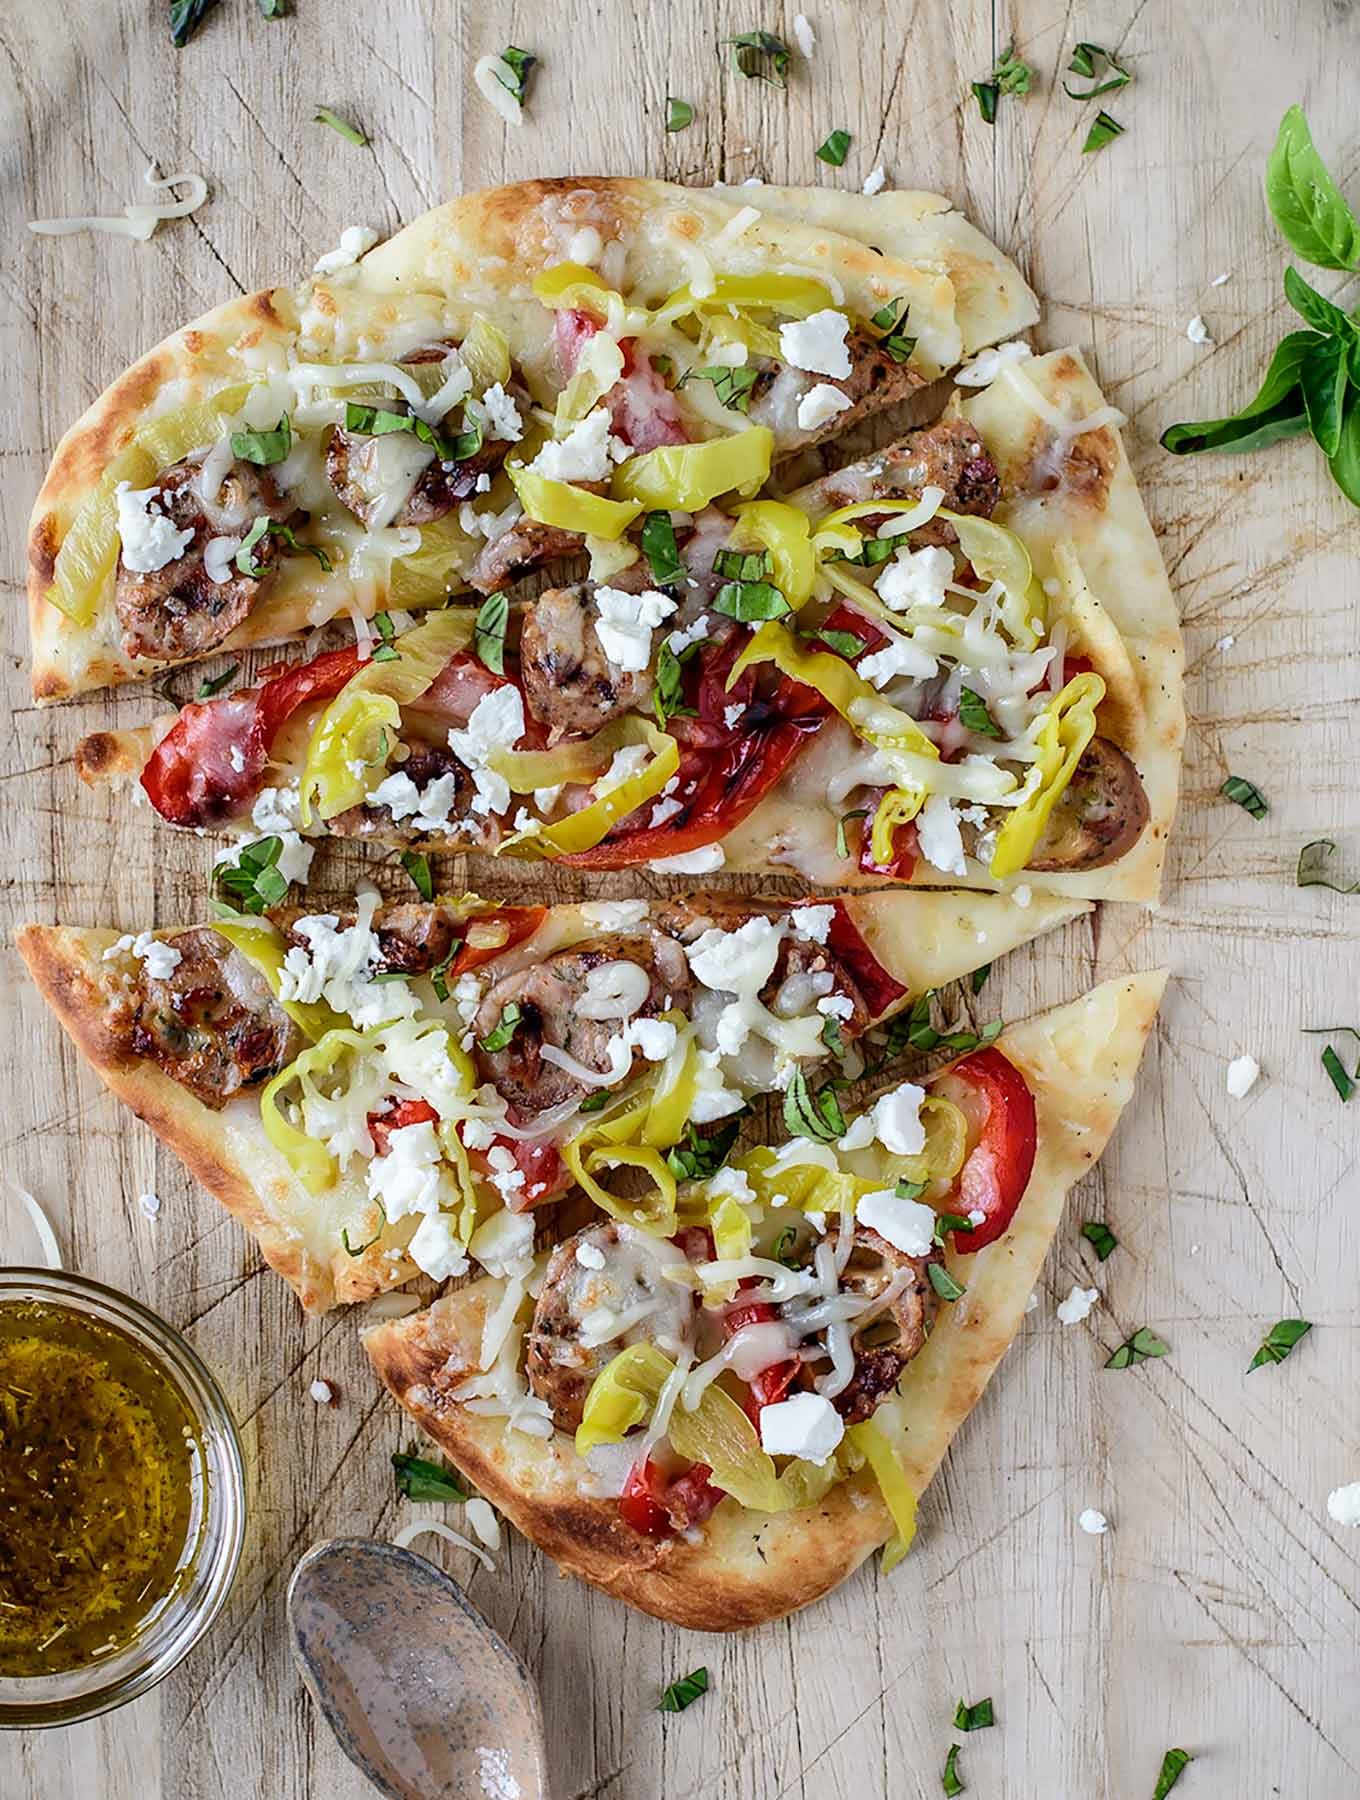 Mediterranean Flatbread Pizza - Mediterranean diet recipes